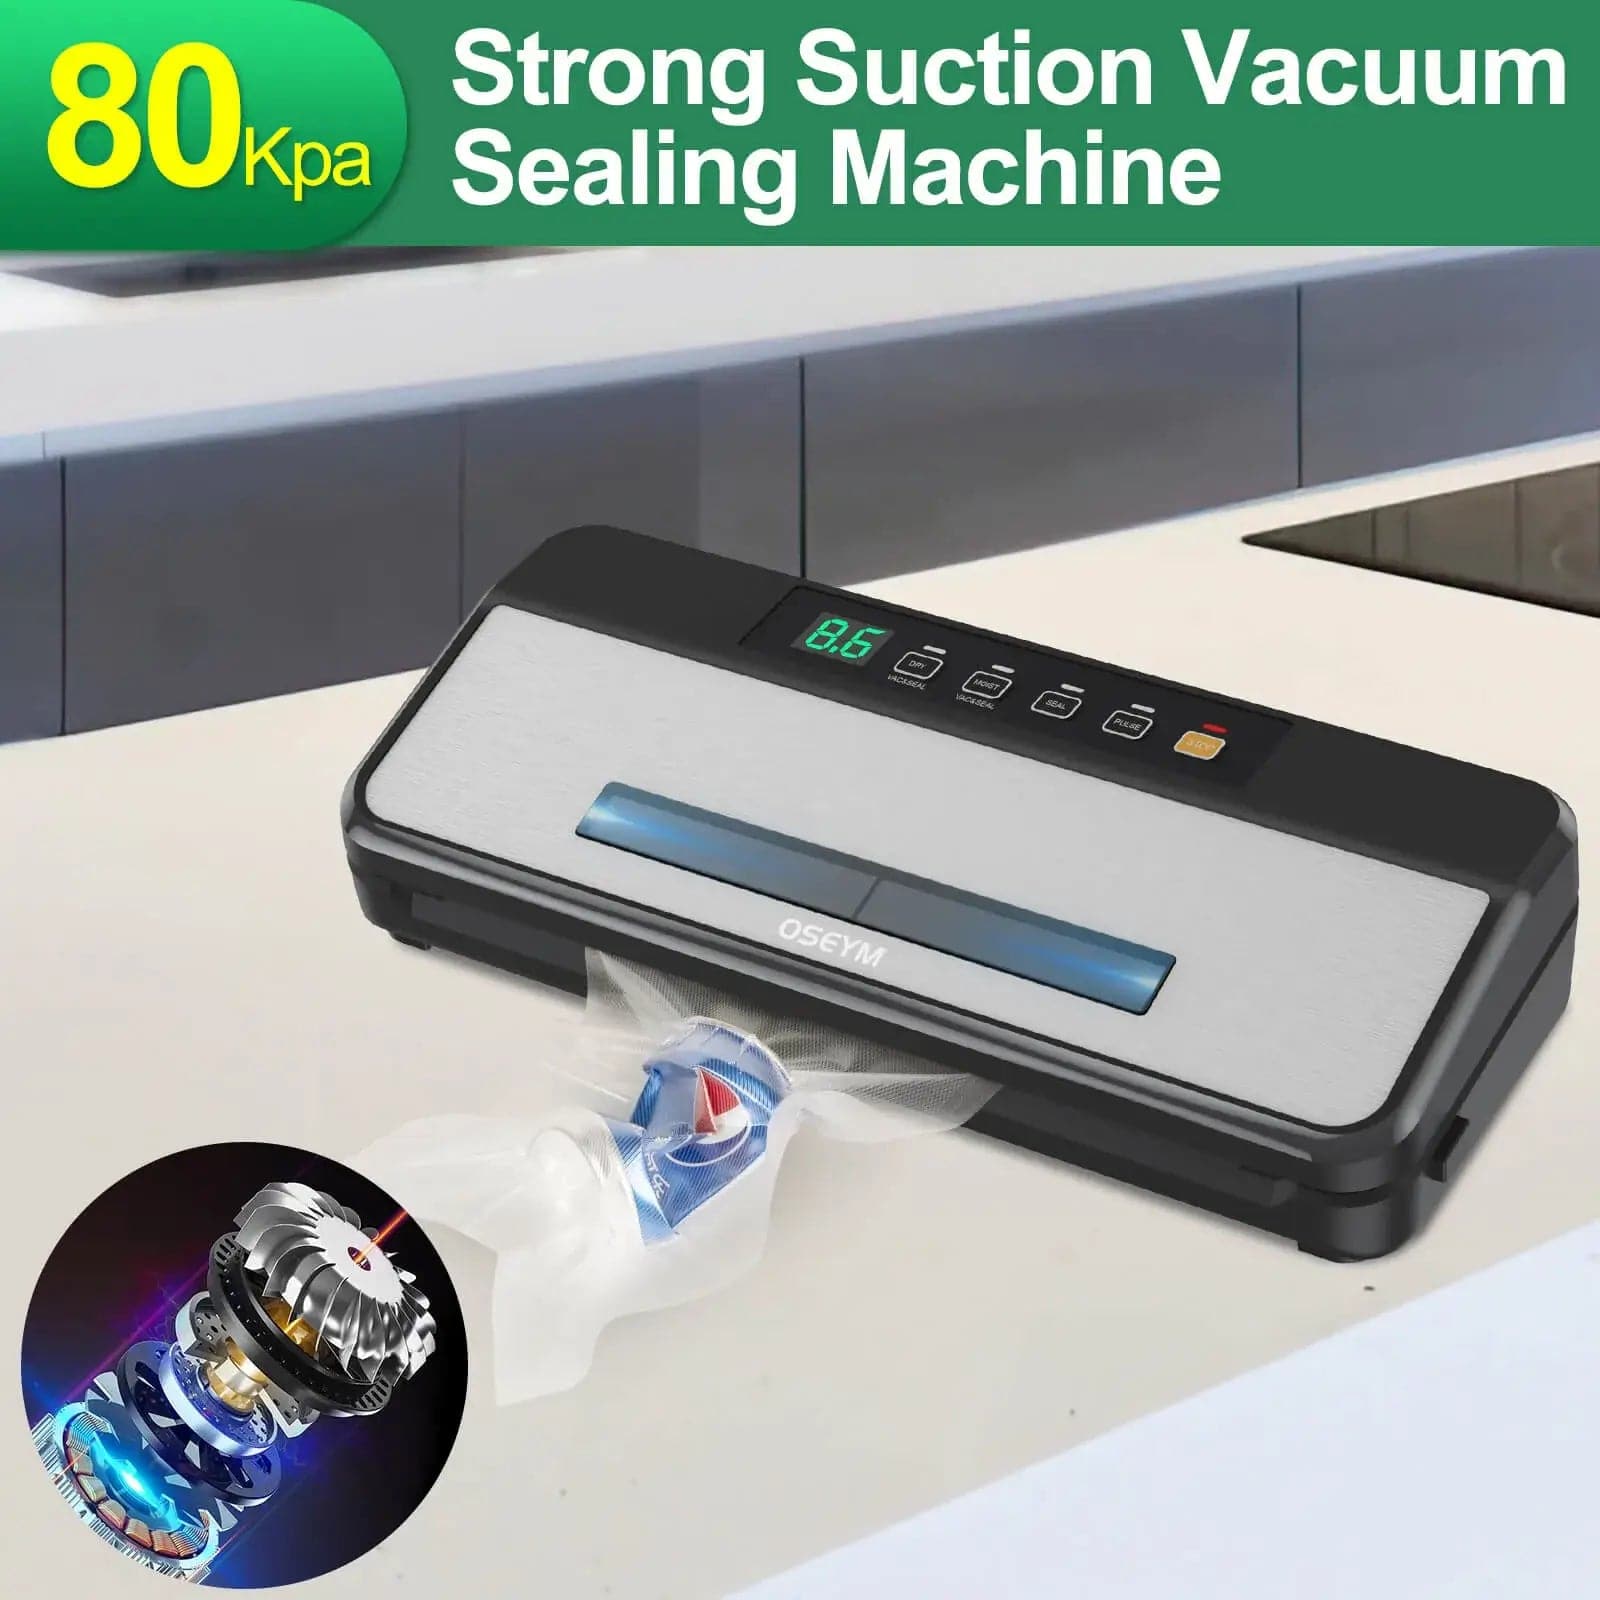 Aoresac Food Vacuum Sealer Machine for Food Saver Automatic Air